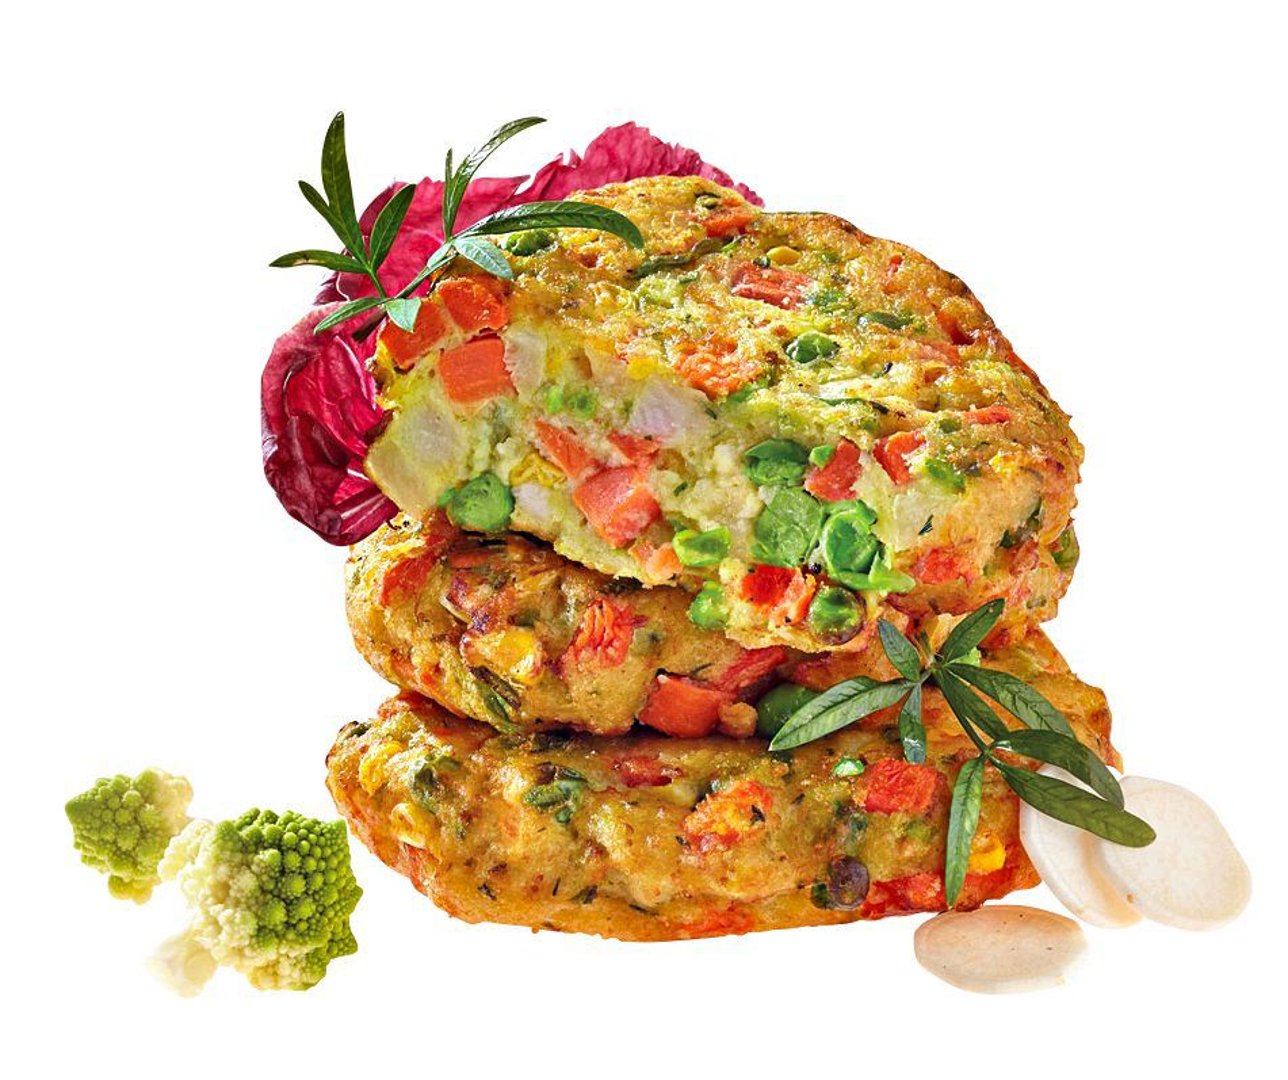 Avita - Vegetarische Gemüse-Frikadelle tiefgefroren, vorgebacken, individuell portionierbar - 16 Stück à 75 g - 1,2 kg Beutel